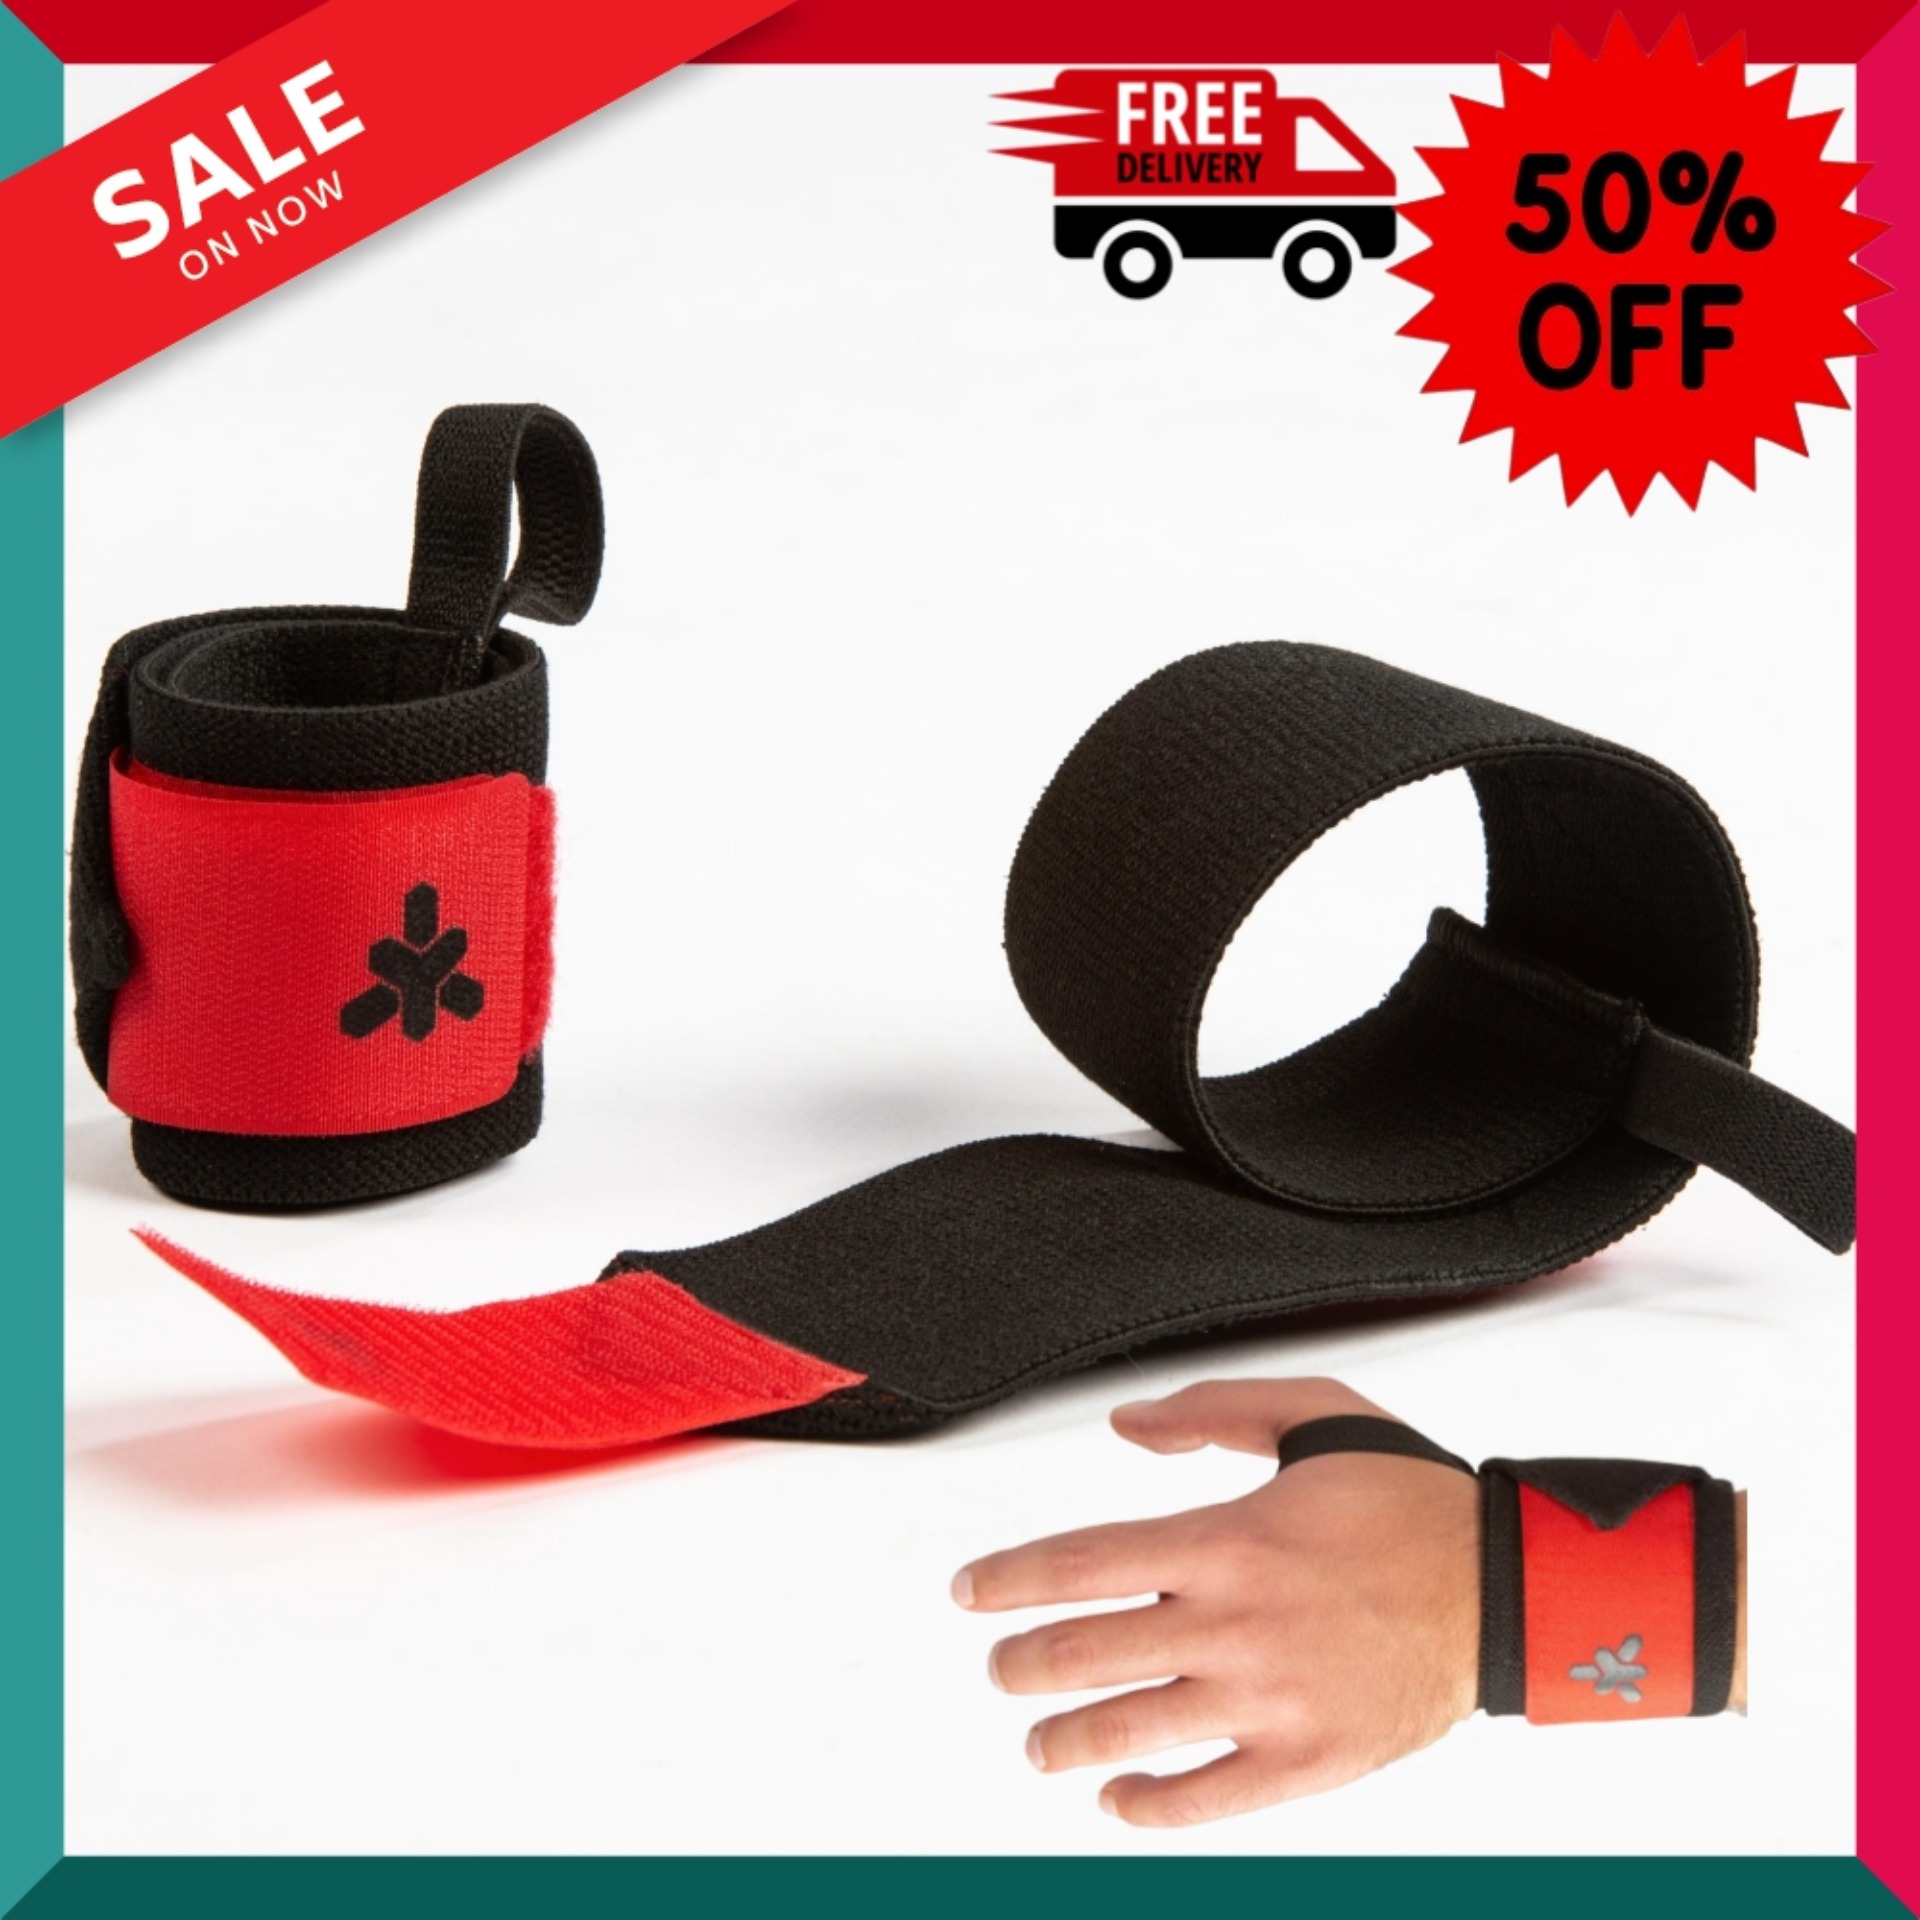 ผ้าพันข้อมือพร้อมแถบตีนตุ๊กแกสำหรับการฝึกเวทเทรนนิ่ง (สีแดง) Weight Training Wrist Support Wraps Velcro Fastening - Red พิลาทิส Pilates อุปกรณ์กีฬา ถุงมือ ถุงมือฟิตเนส โปรโมชั่นสุดคุ้ม โค้งสุดท้าย ส่งฟรี Free Delivery